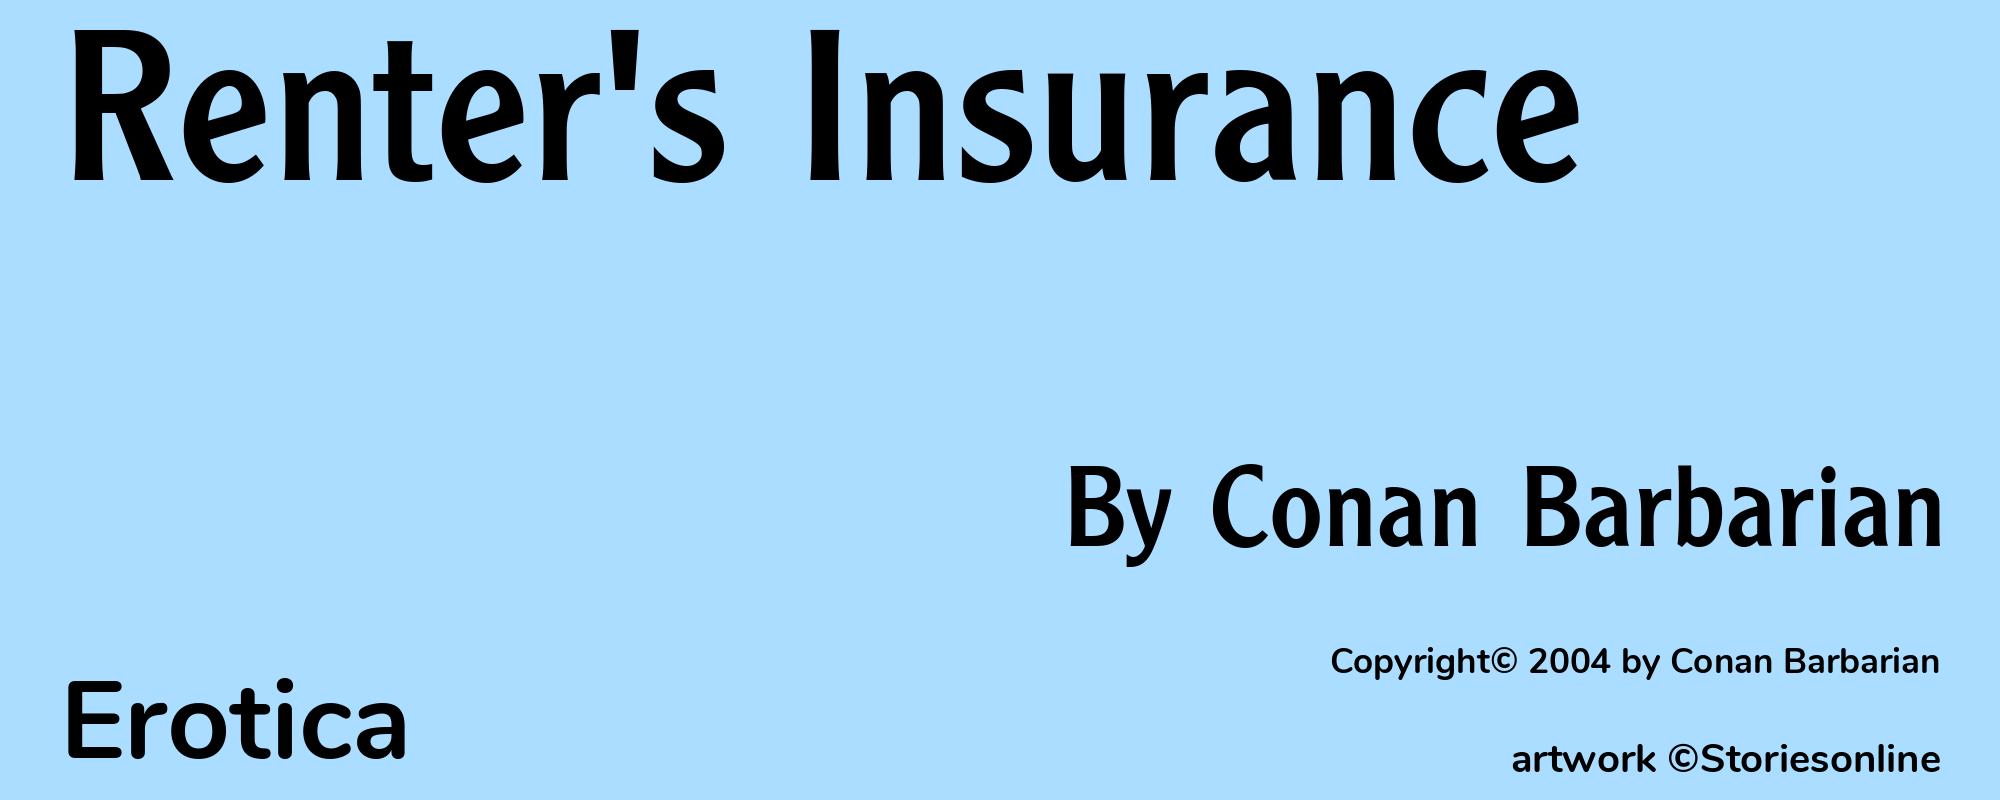 Renter's Insurance - Cover